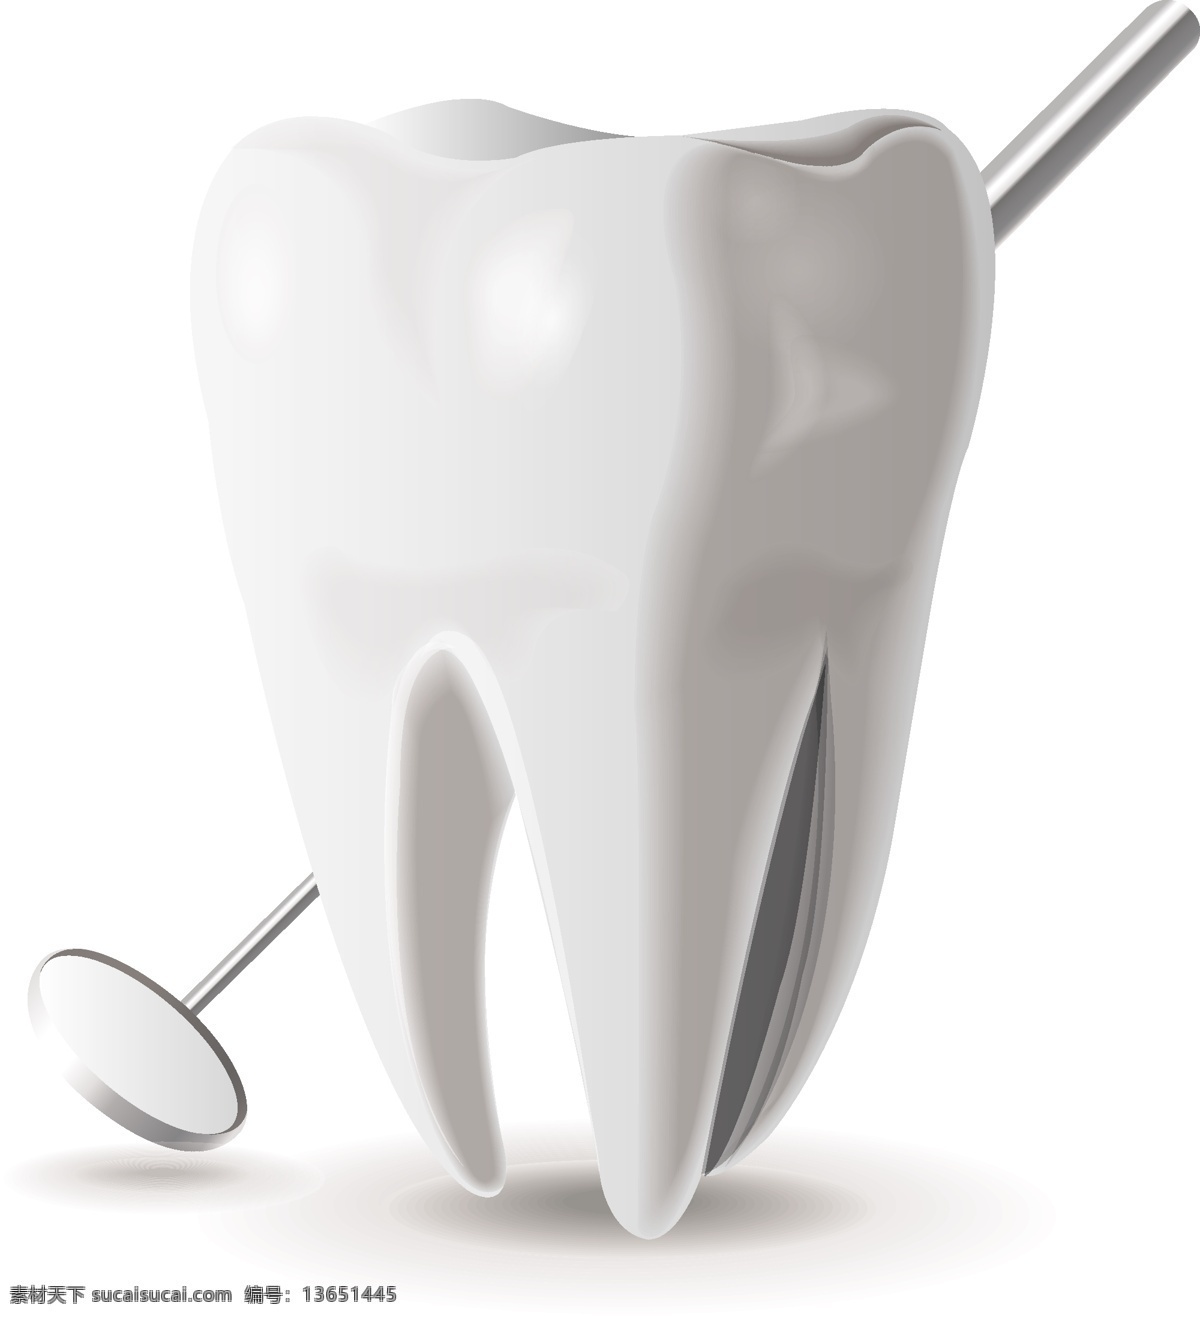 牙齿和牙镜 牙齿 牙镜 牙科 牙齿模型 医疗图标 医药图标 医疗 医学 生活百科 矢量素材 其他模板 白色